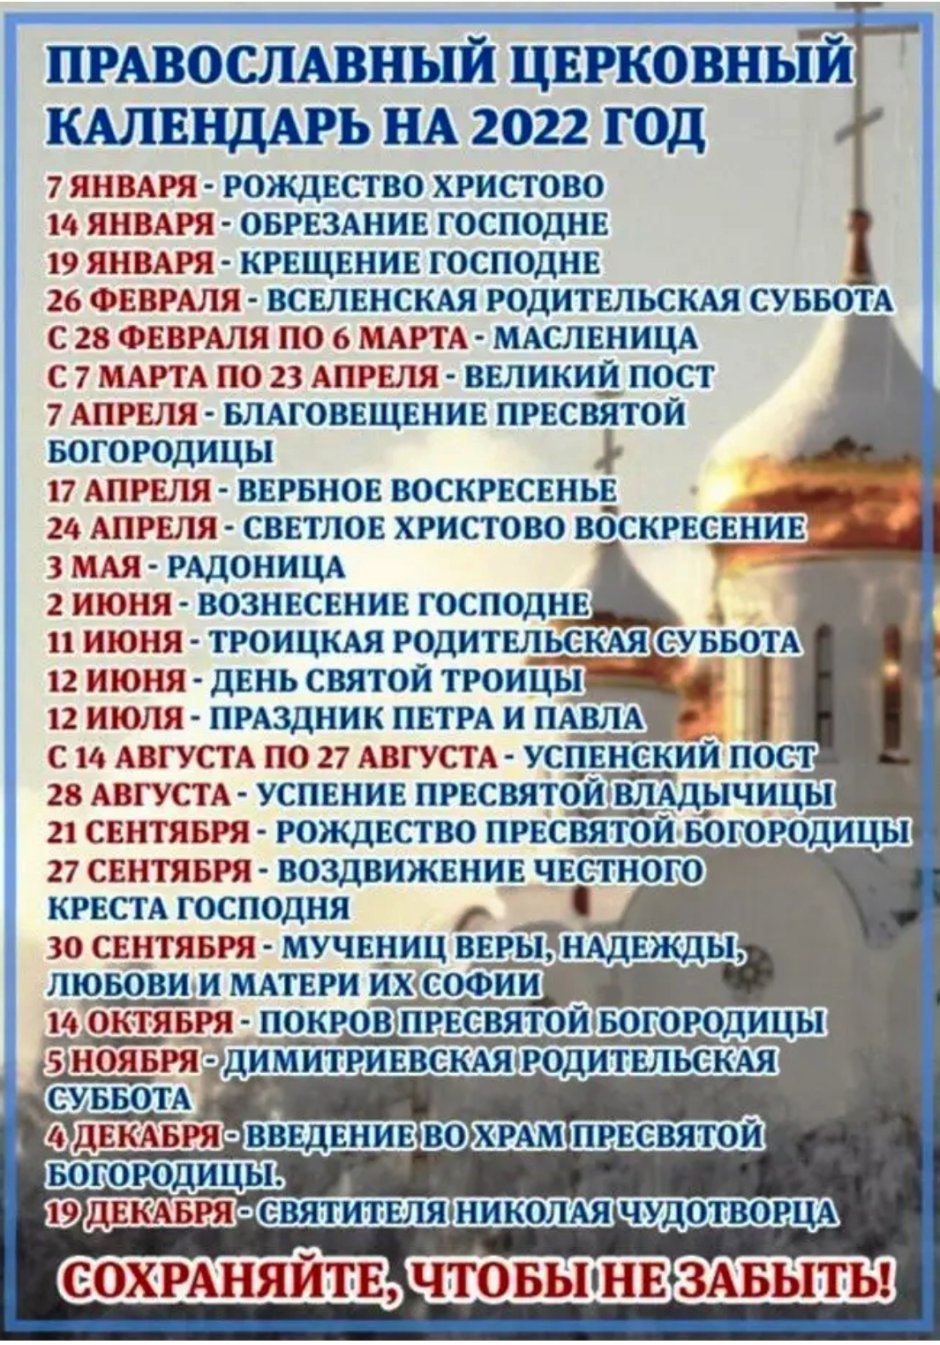 25 Февраля 2022 праздник православный